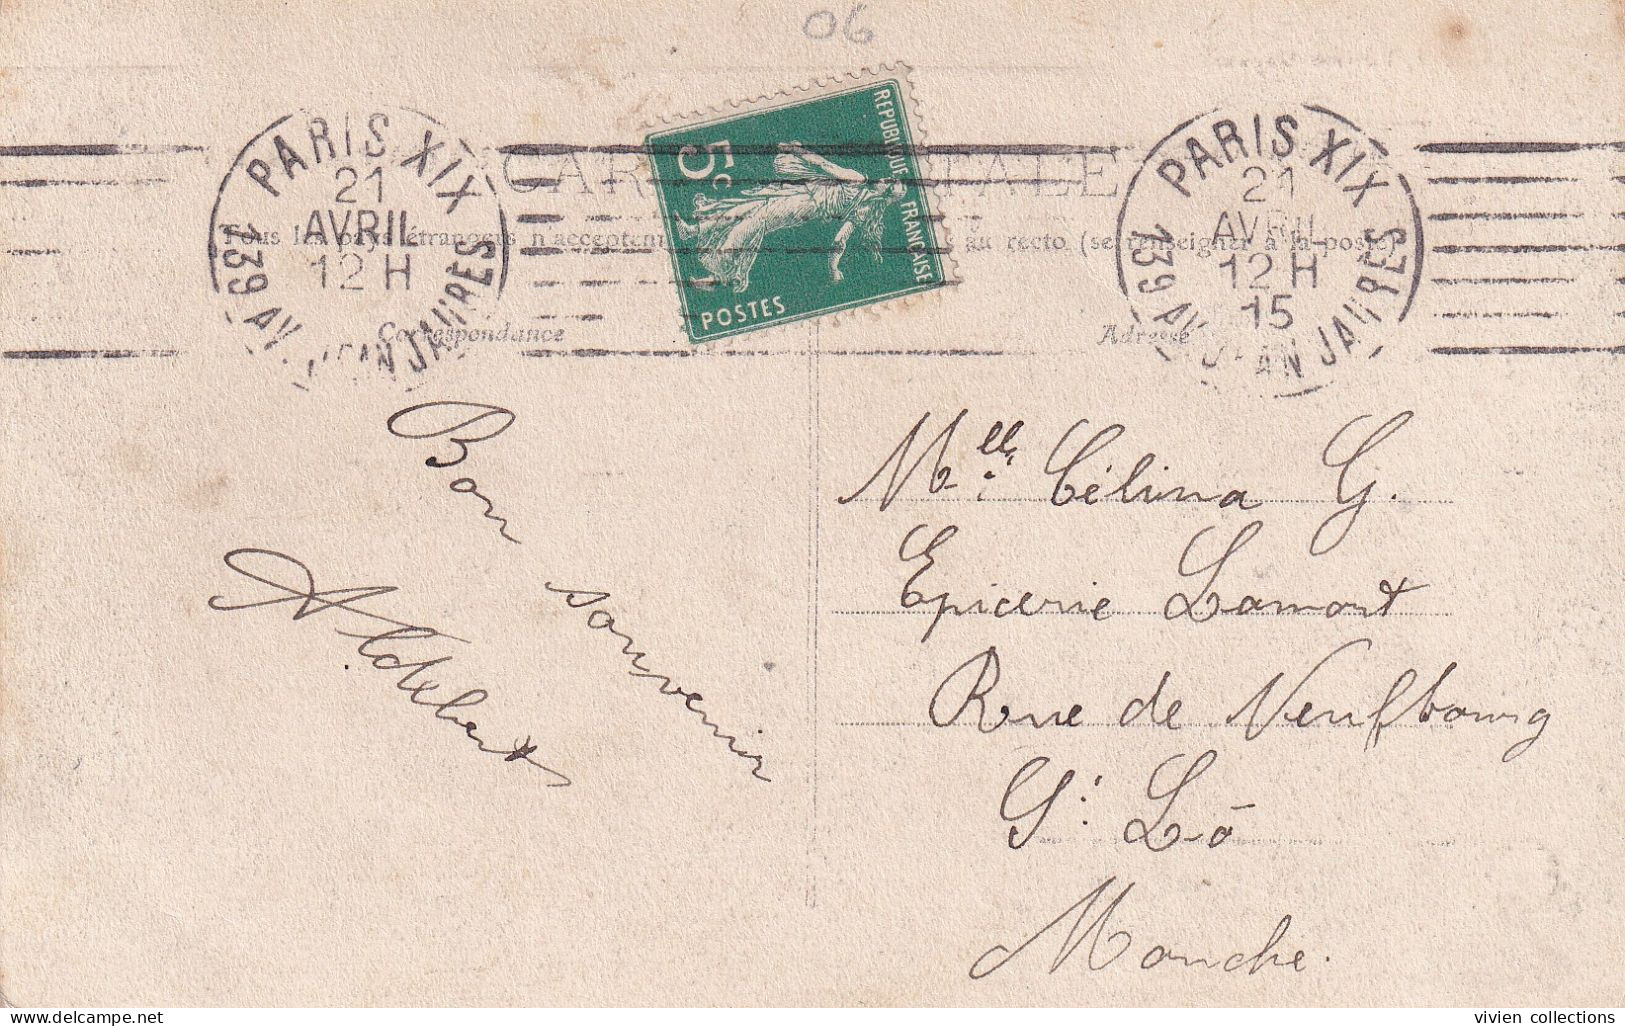 Oblitération Mécanique KRAG (7 Lignes) Paris XIX 139 Av. Jean Jaurès En 1915 Sur Carte De Beuil (06) Pour (50) - Mechanical Postmarks (Other)